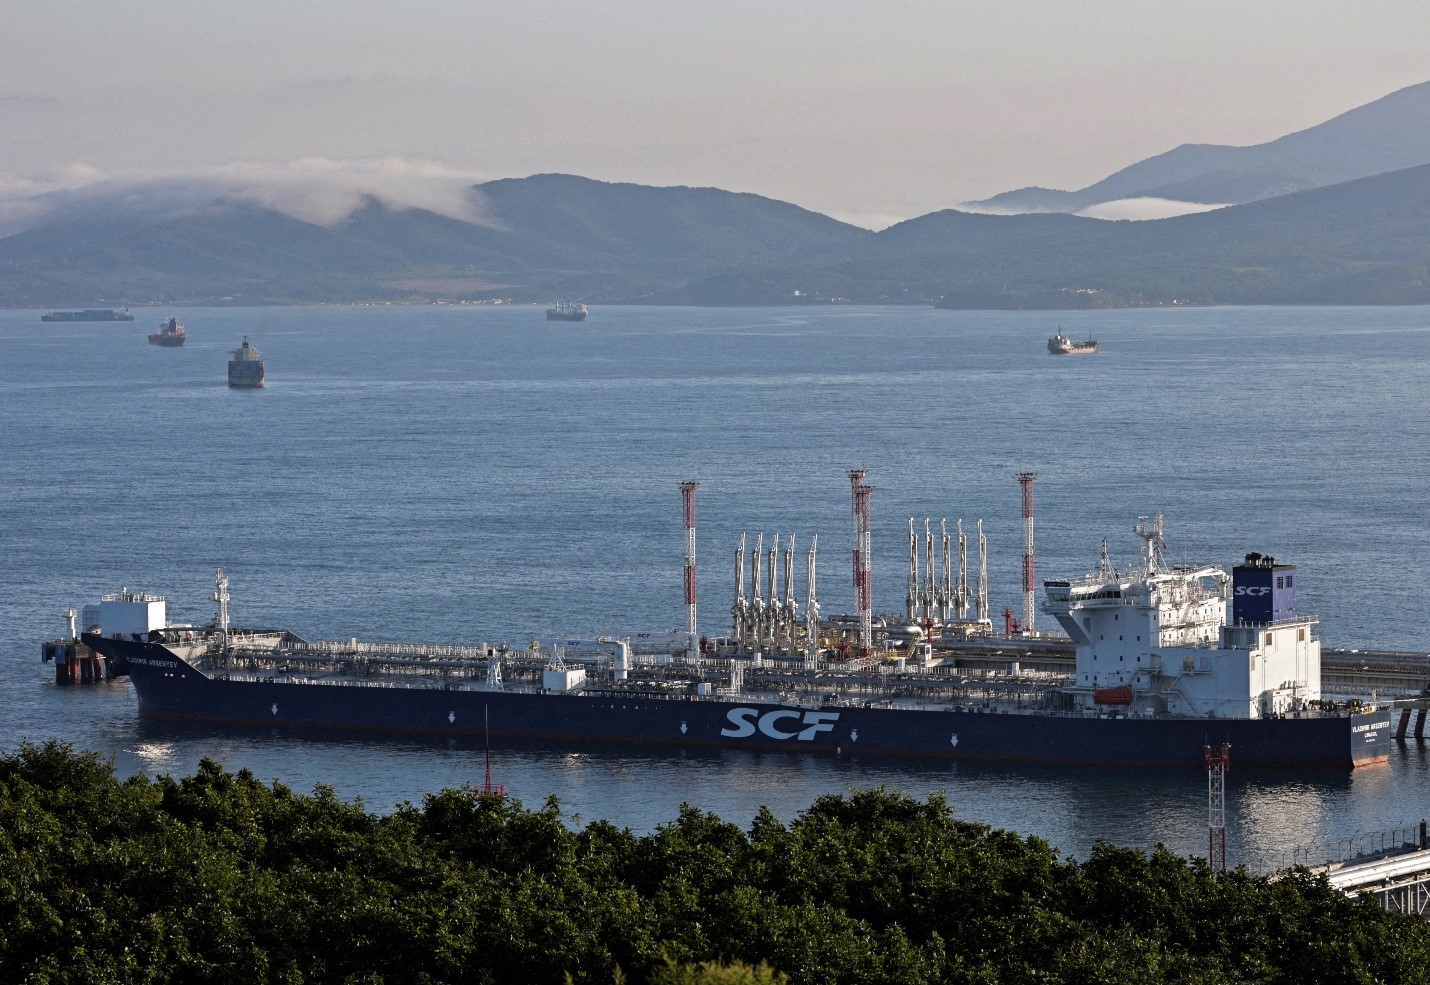 ناقلة النفط فلاديمير أرسينييف بالقرب من مدينة ناخودكا الساحلية في روسيا